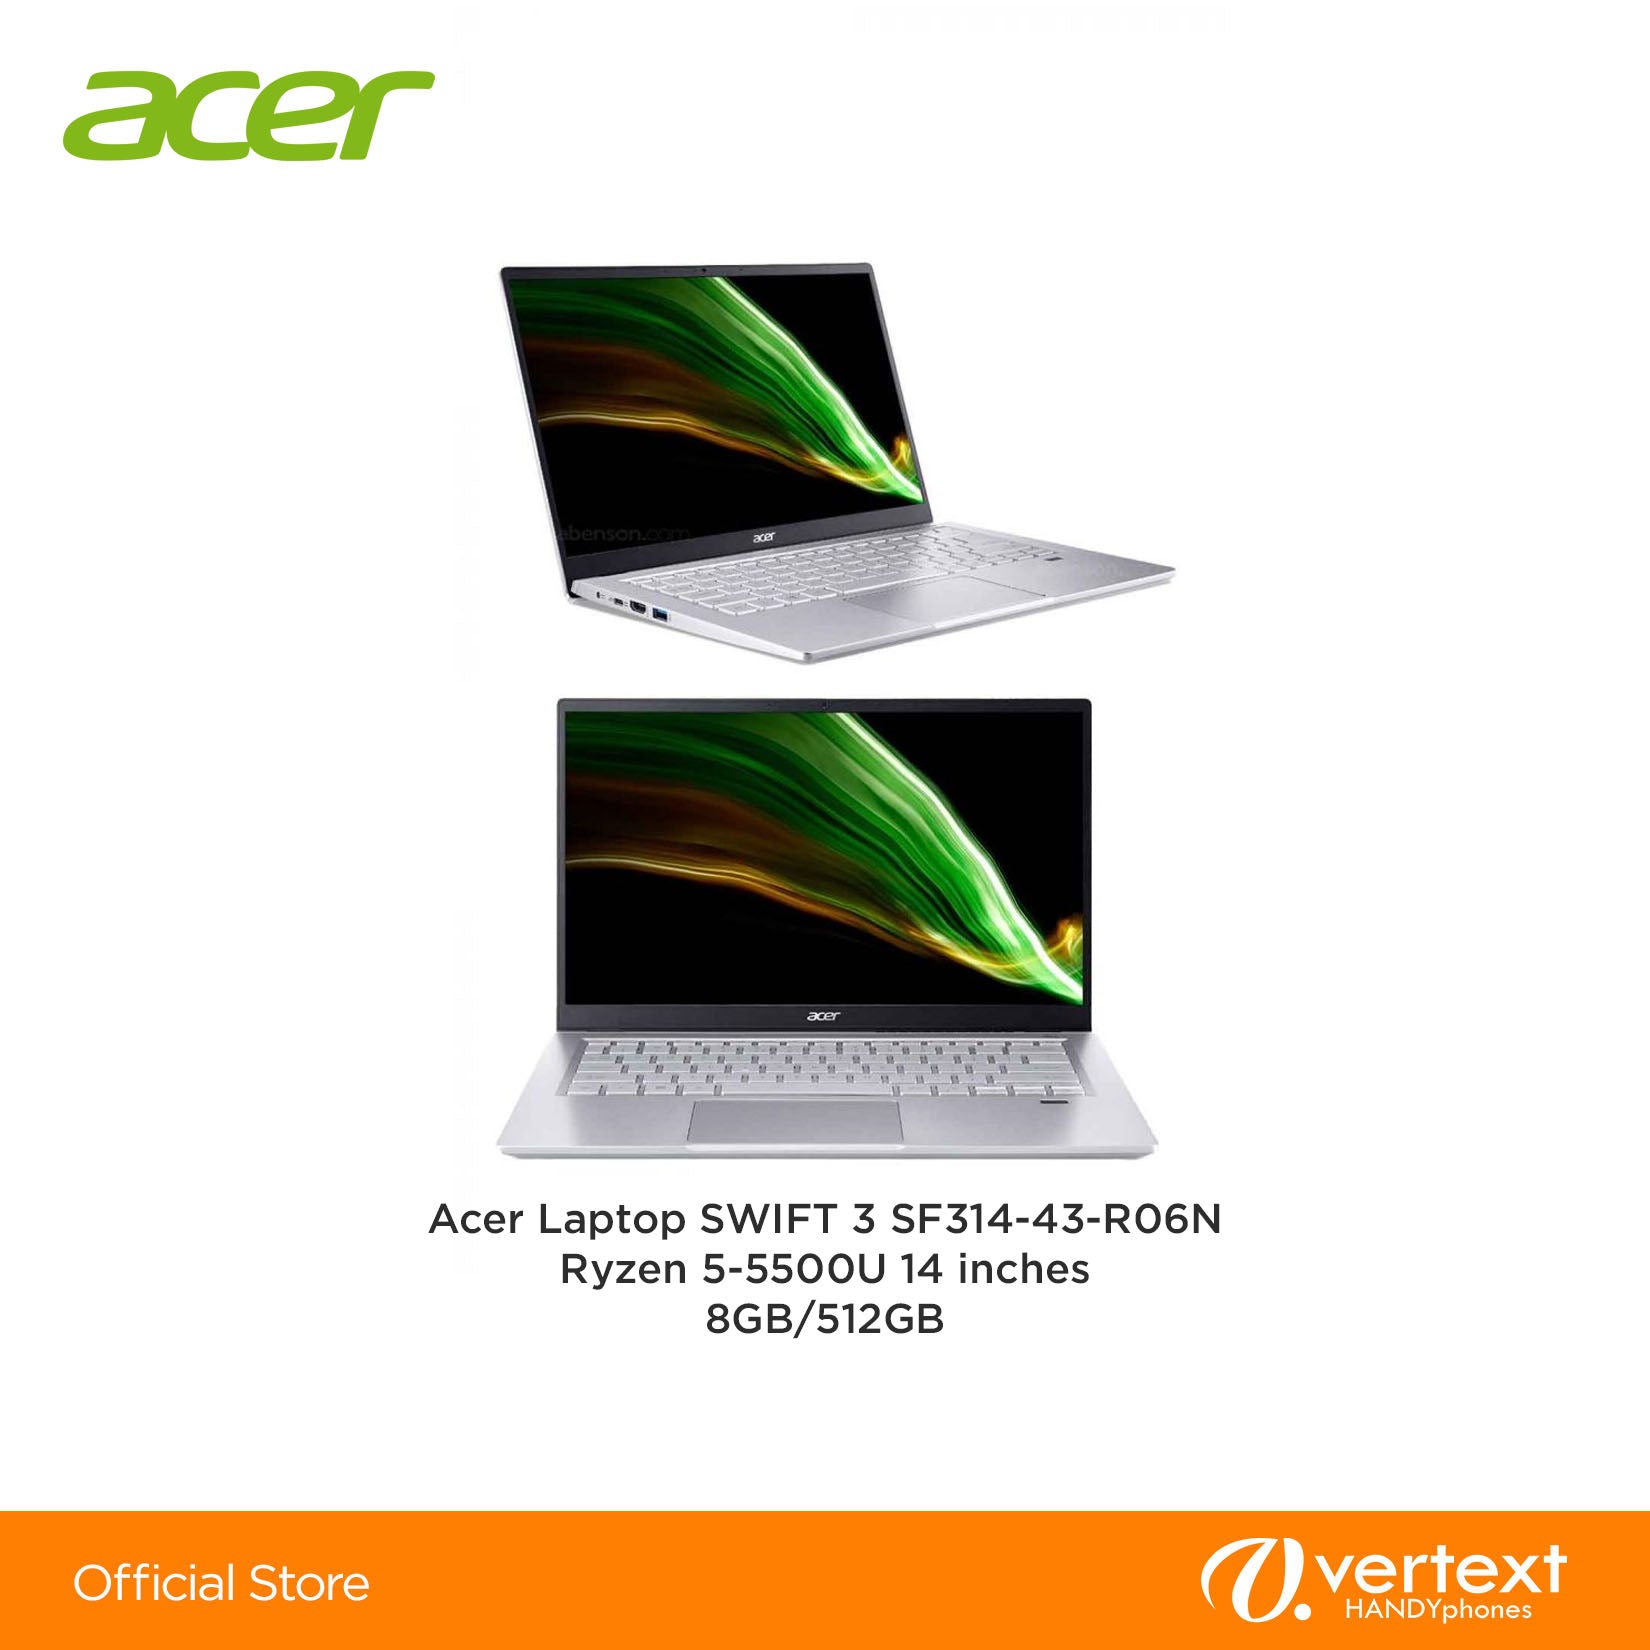 Acer Laptop SWIFT 3 SF314-43-R06N Ryzen 5-5500U 14 inches